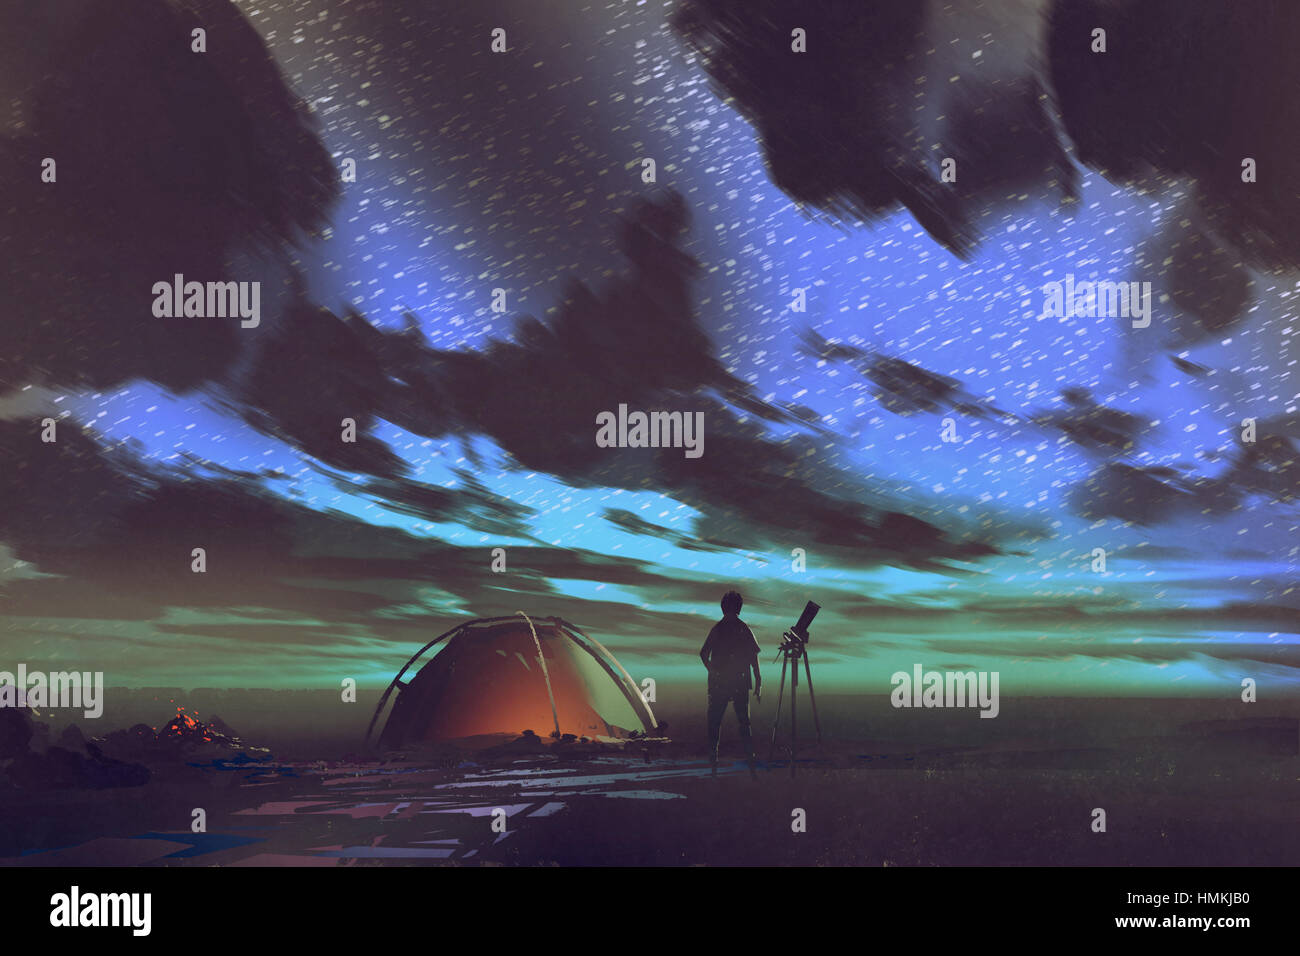 Télescope avec l'homme debout devant tente de regarder le ciel de nuit,illustration peinture Banque D'Images